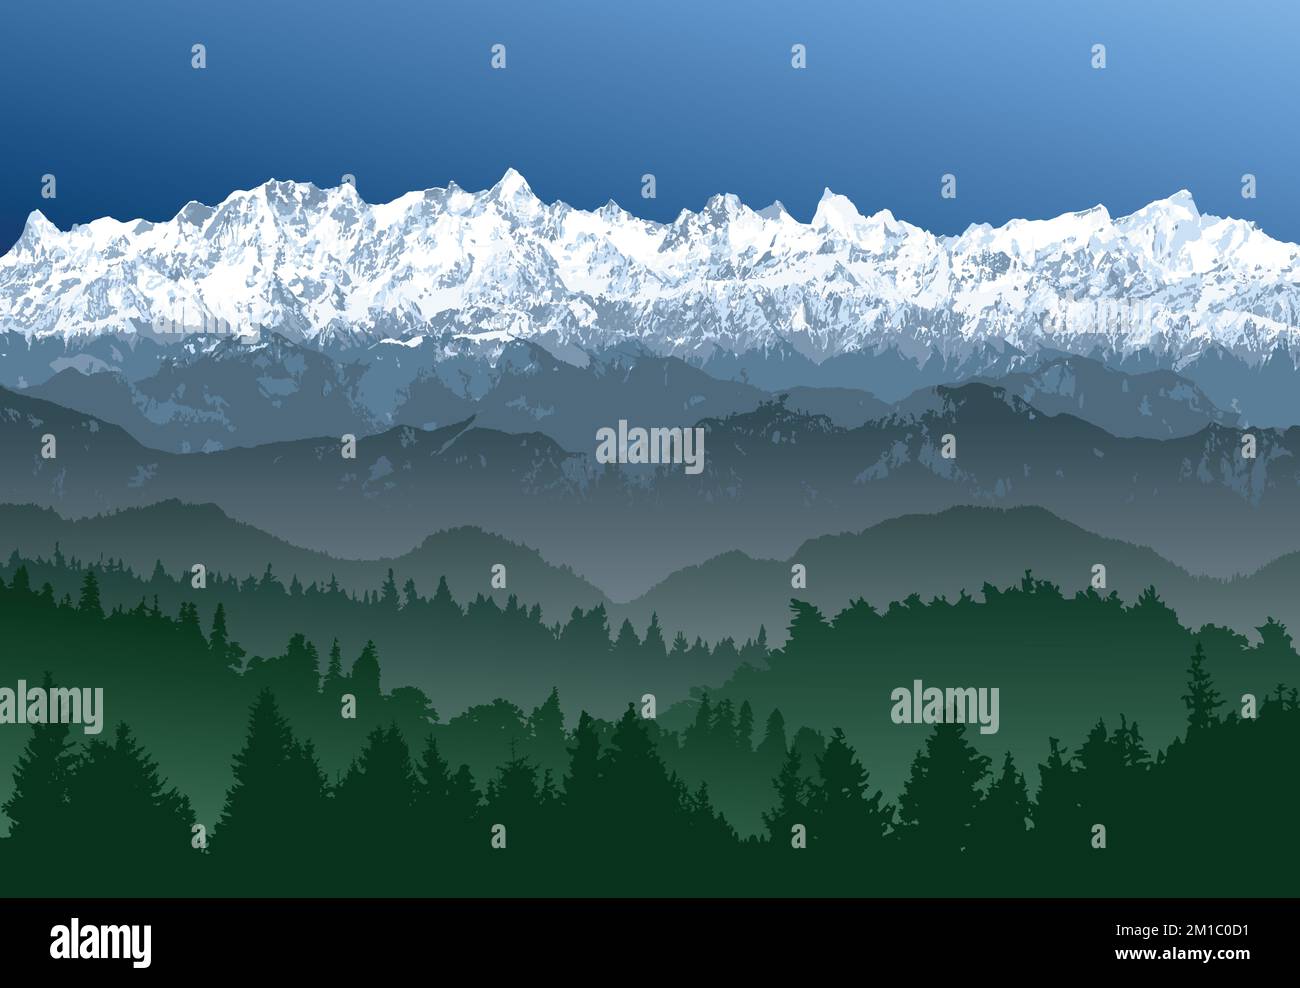 Grande catena himalayana con boschi, Himalayas montagne vettoriali illustrazione, innevata montagna di colore bianco e blu Illustrazione Vettoriale